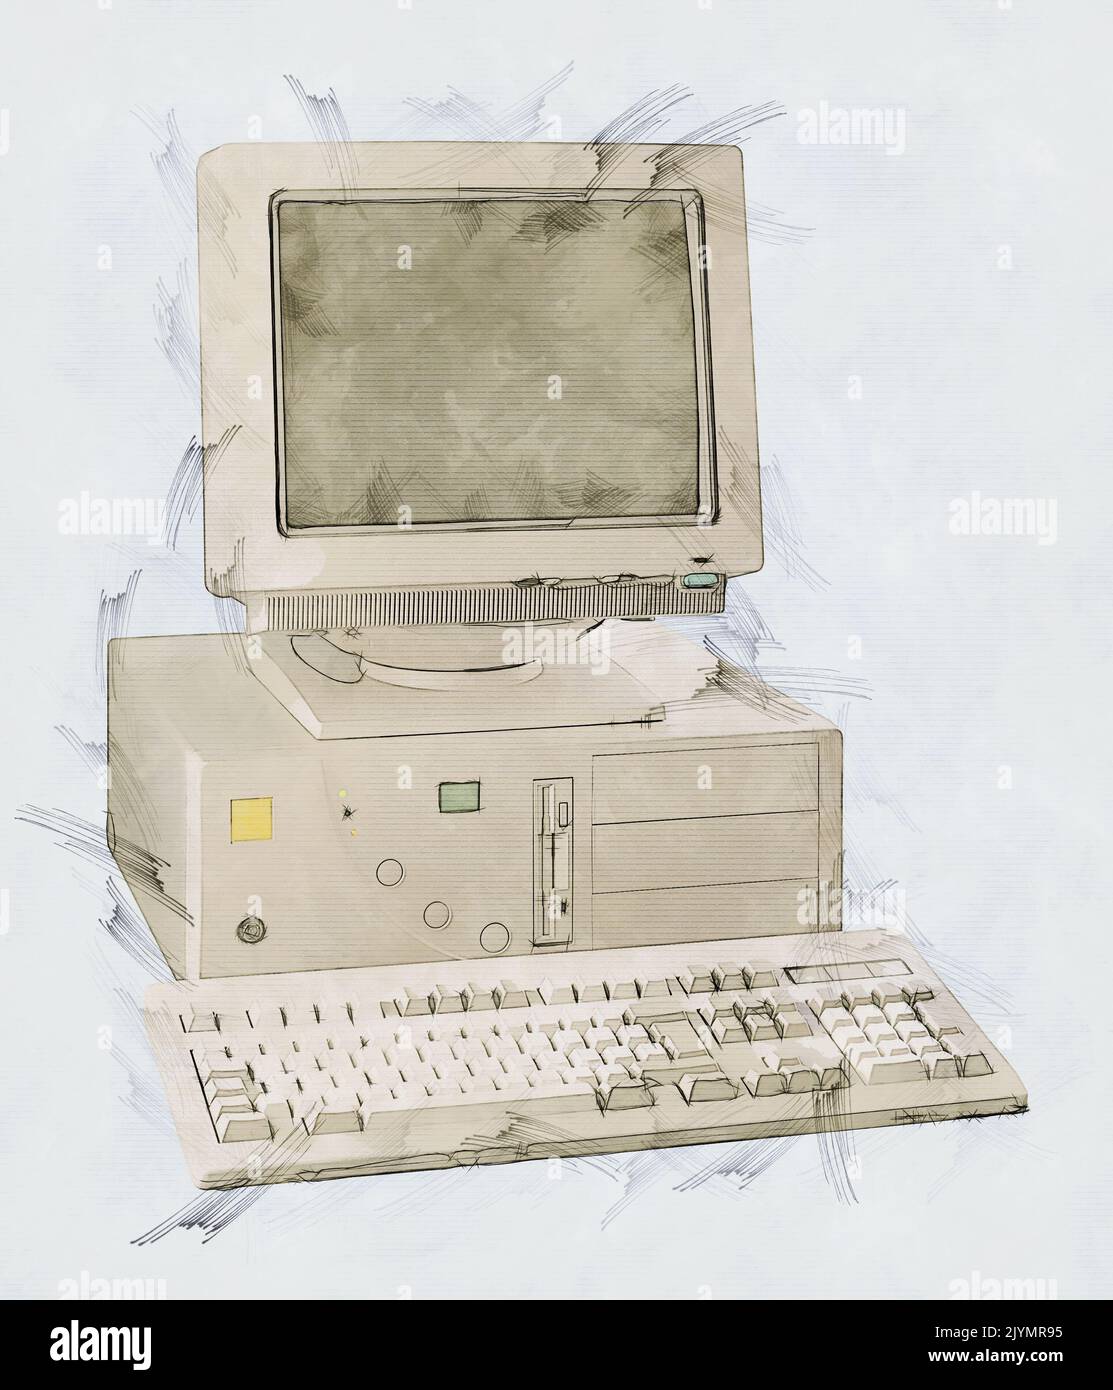 Illustration Skizze eines veralteten Tower-pc-Computers aus den neunziger Jahren Stockfoto